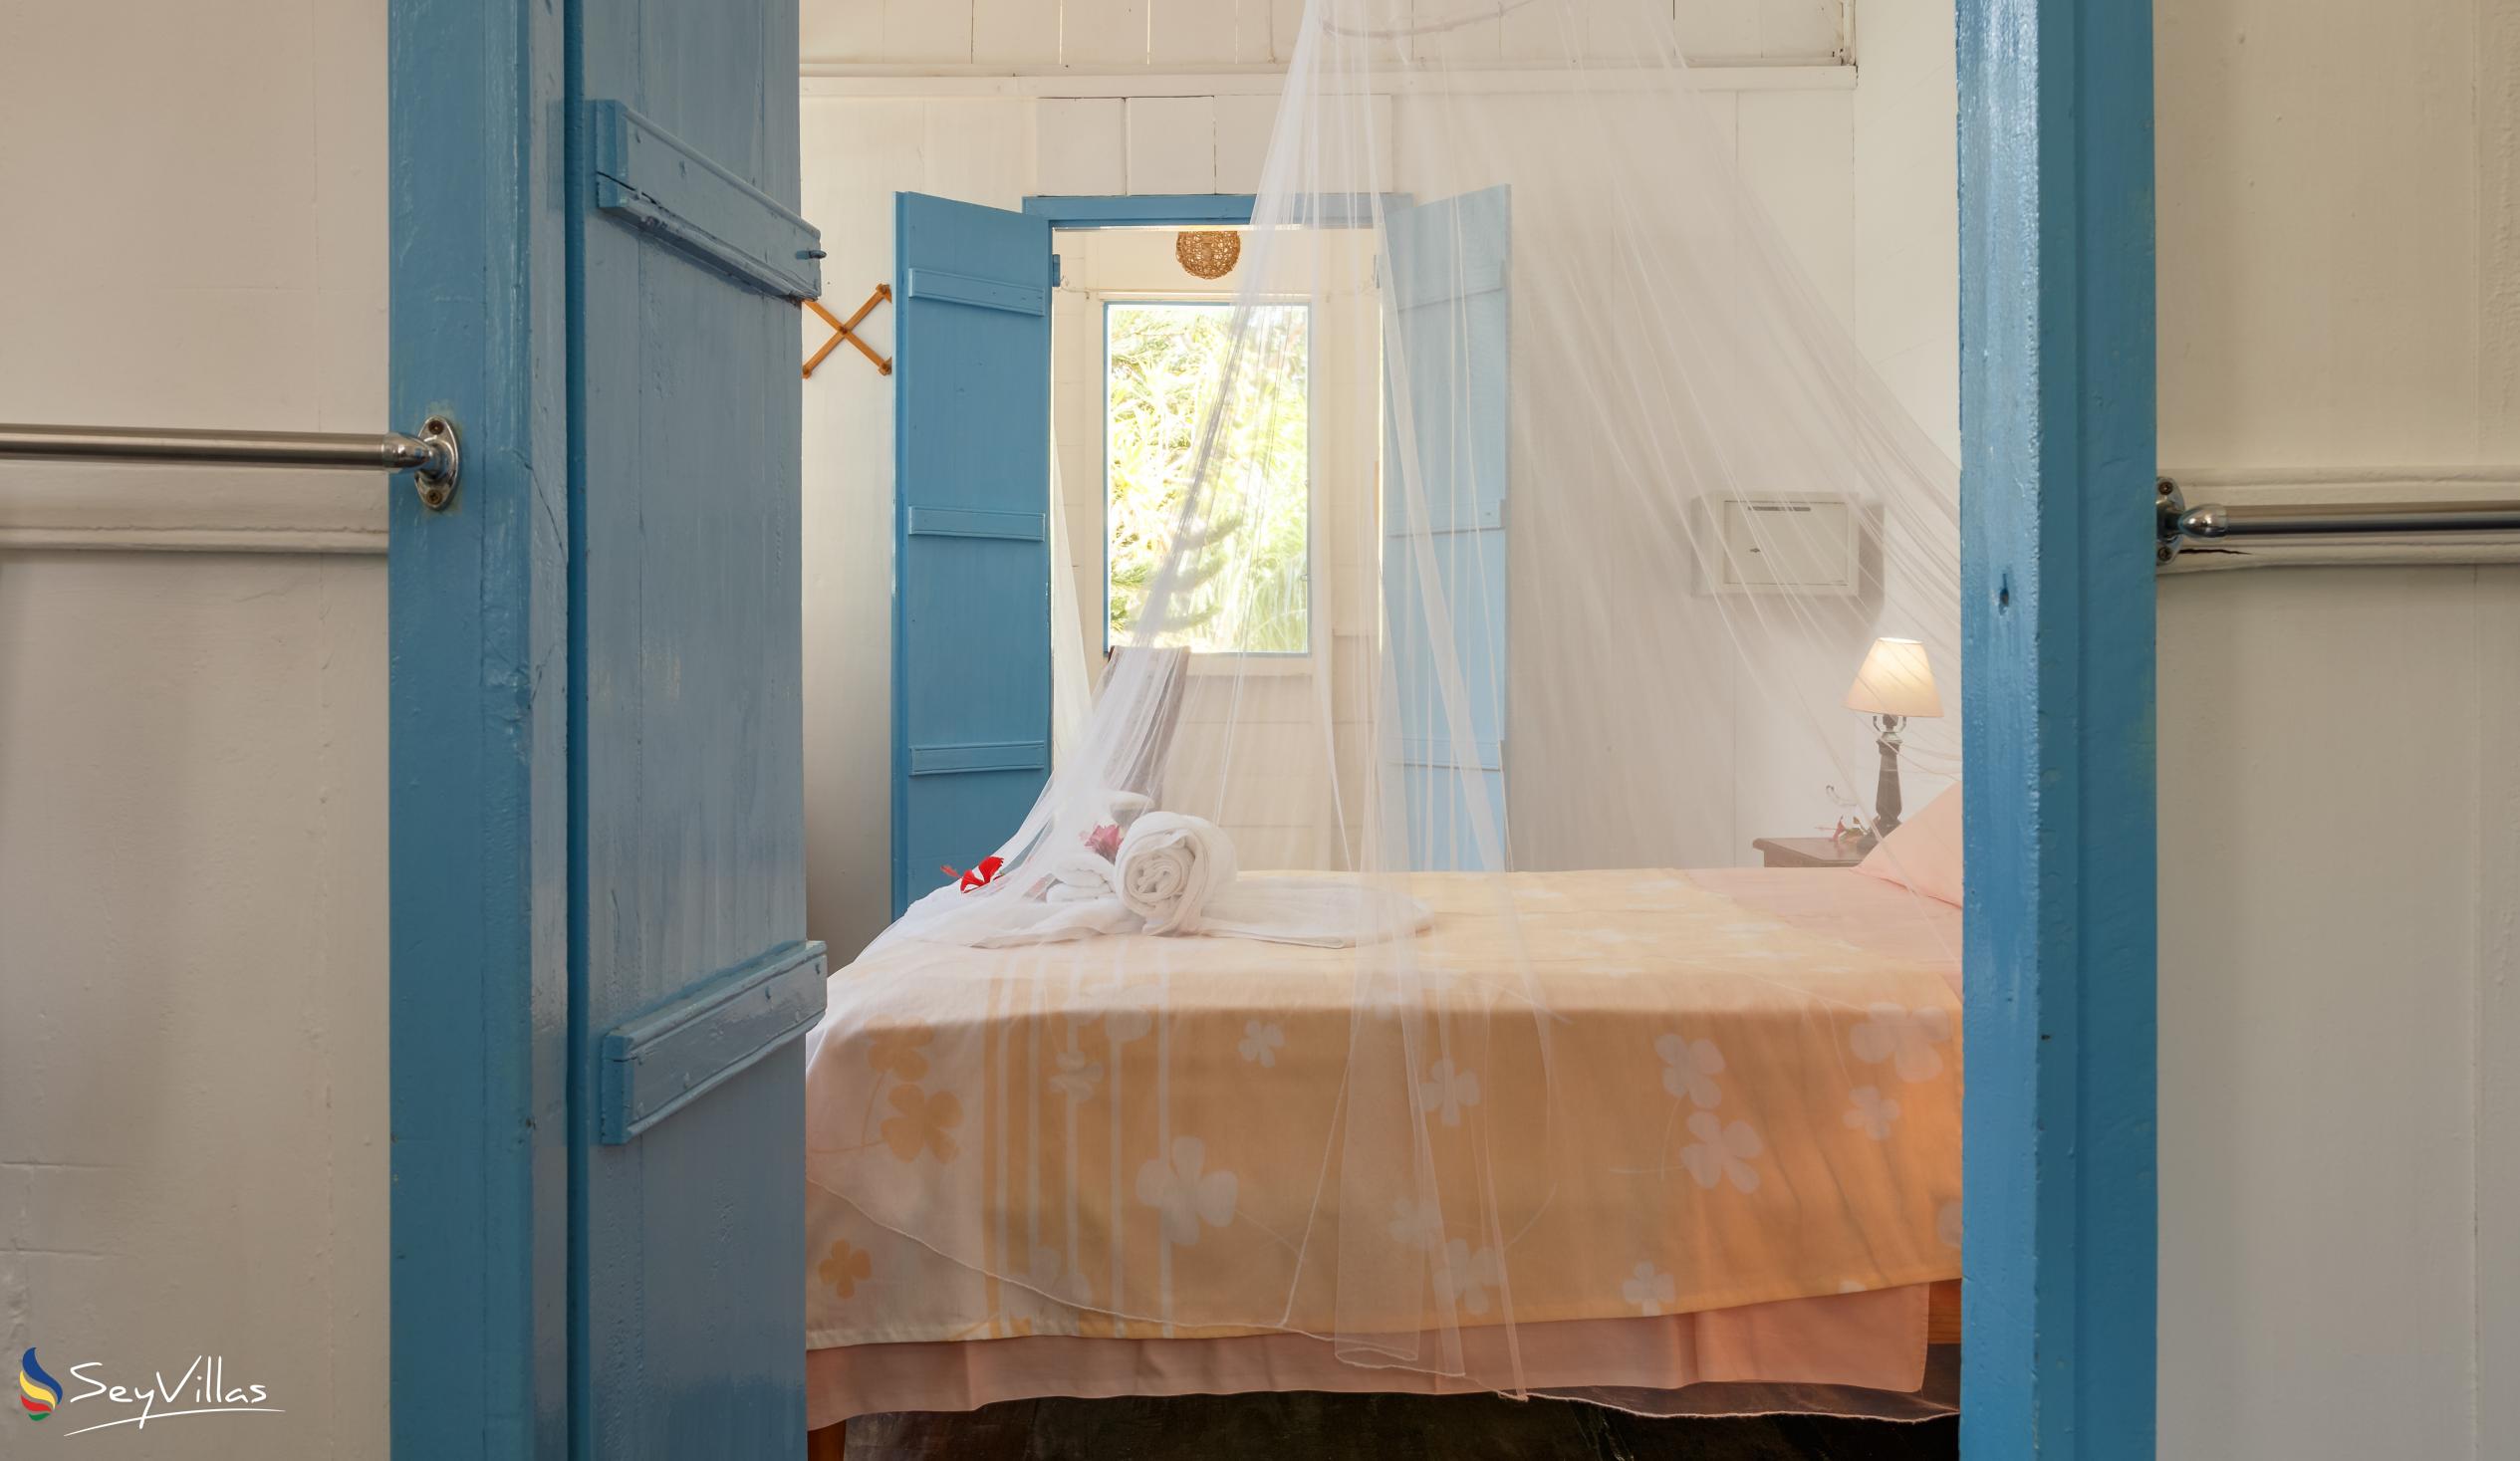 Foto 55: The Beach House (Chateau Martha) - Maison de vacances avec 2 chambres à coucher - Mahé (Seychelles)